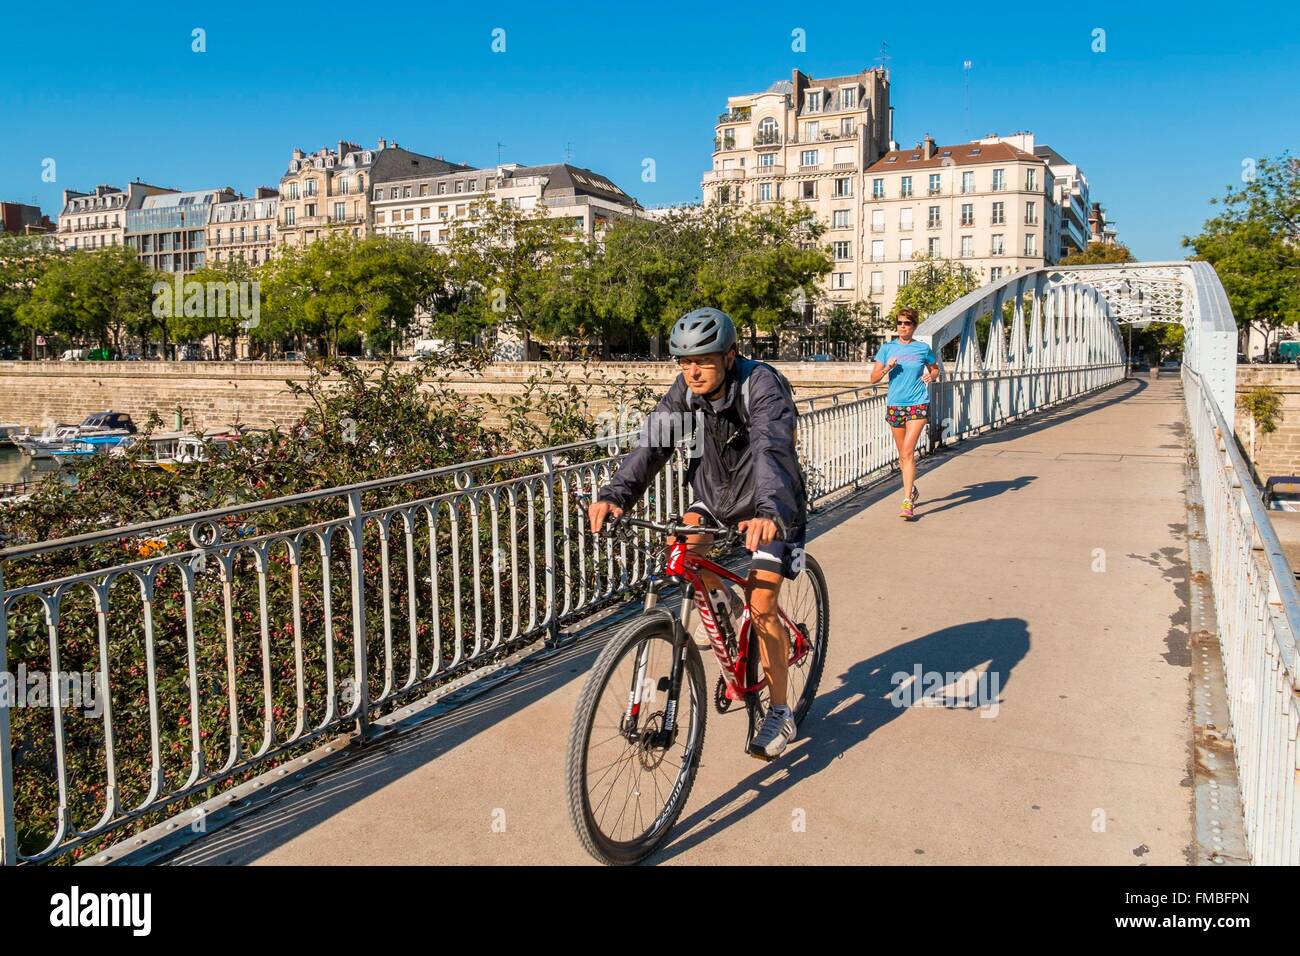 Frankreich, Paris, Bastille, der Arsenal-Hafen, das Tor Mornay Stockfoto